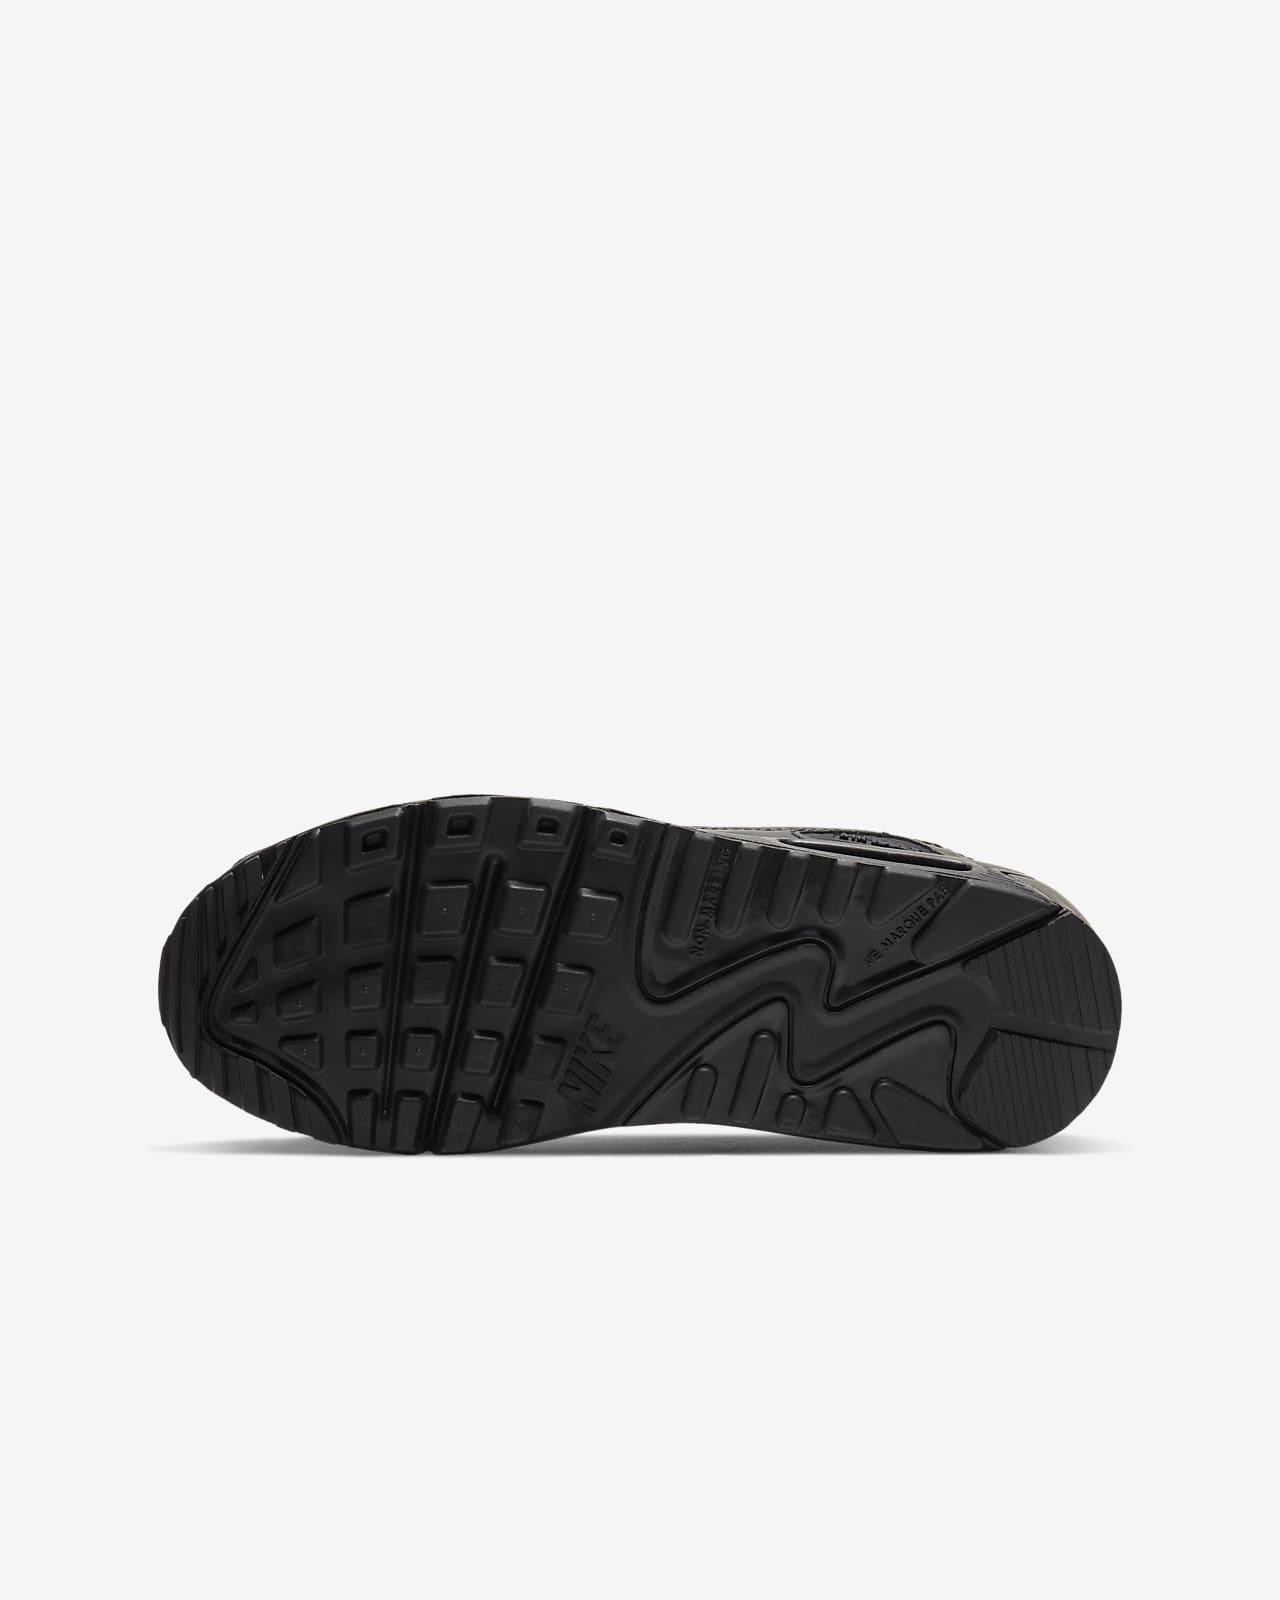 90 LTR Zapatillas - Niño/a. Nike ES